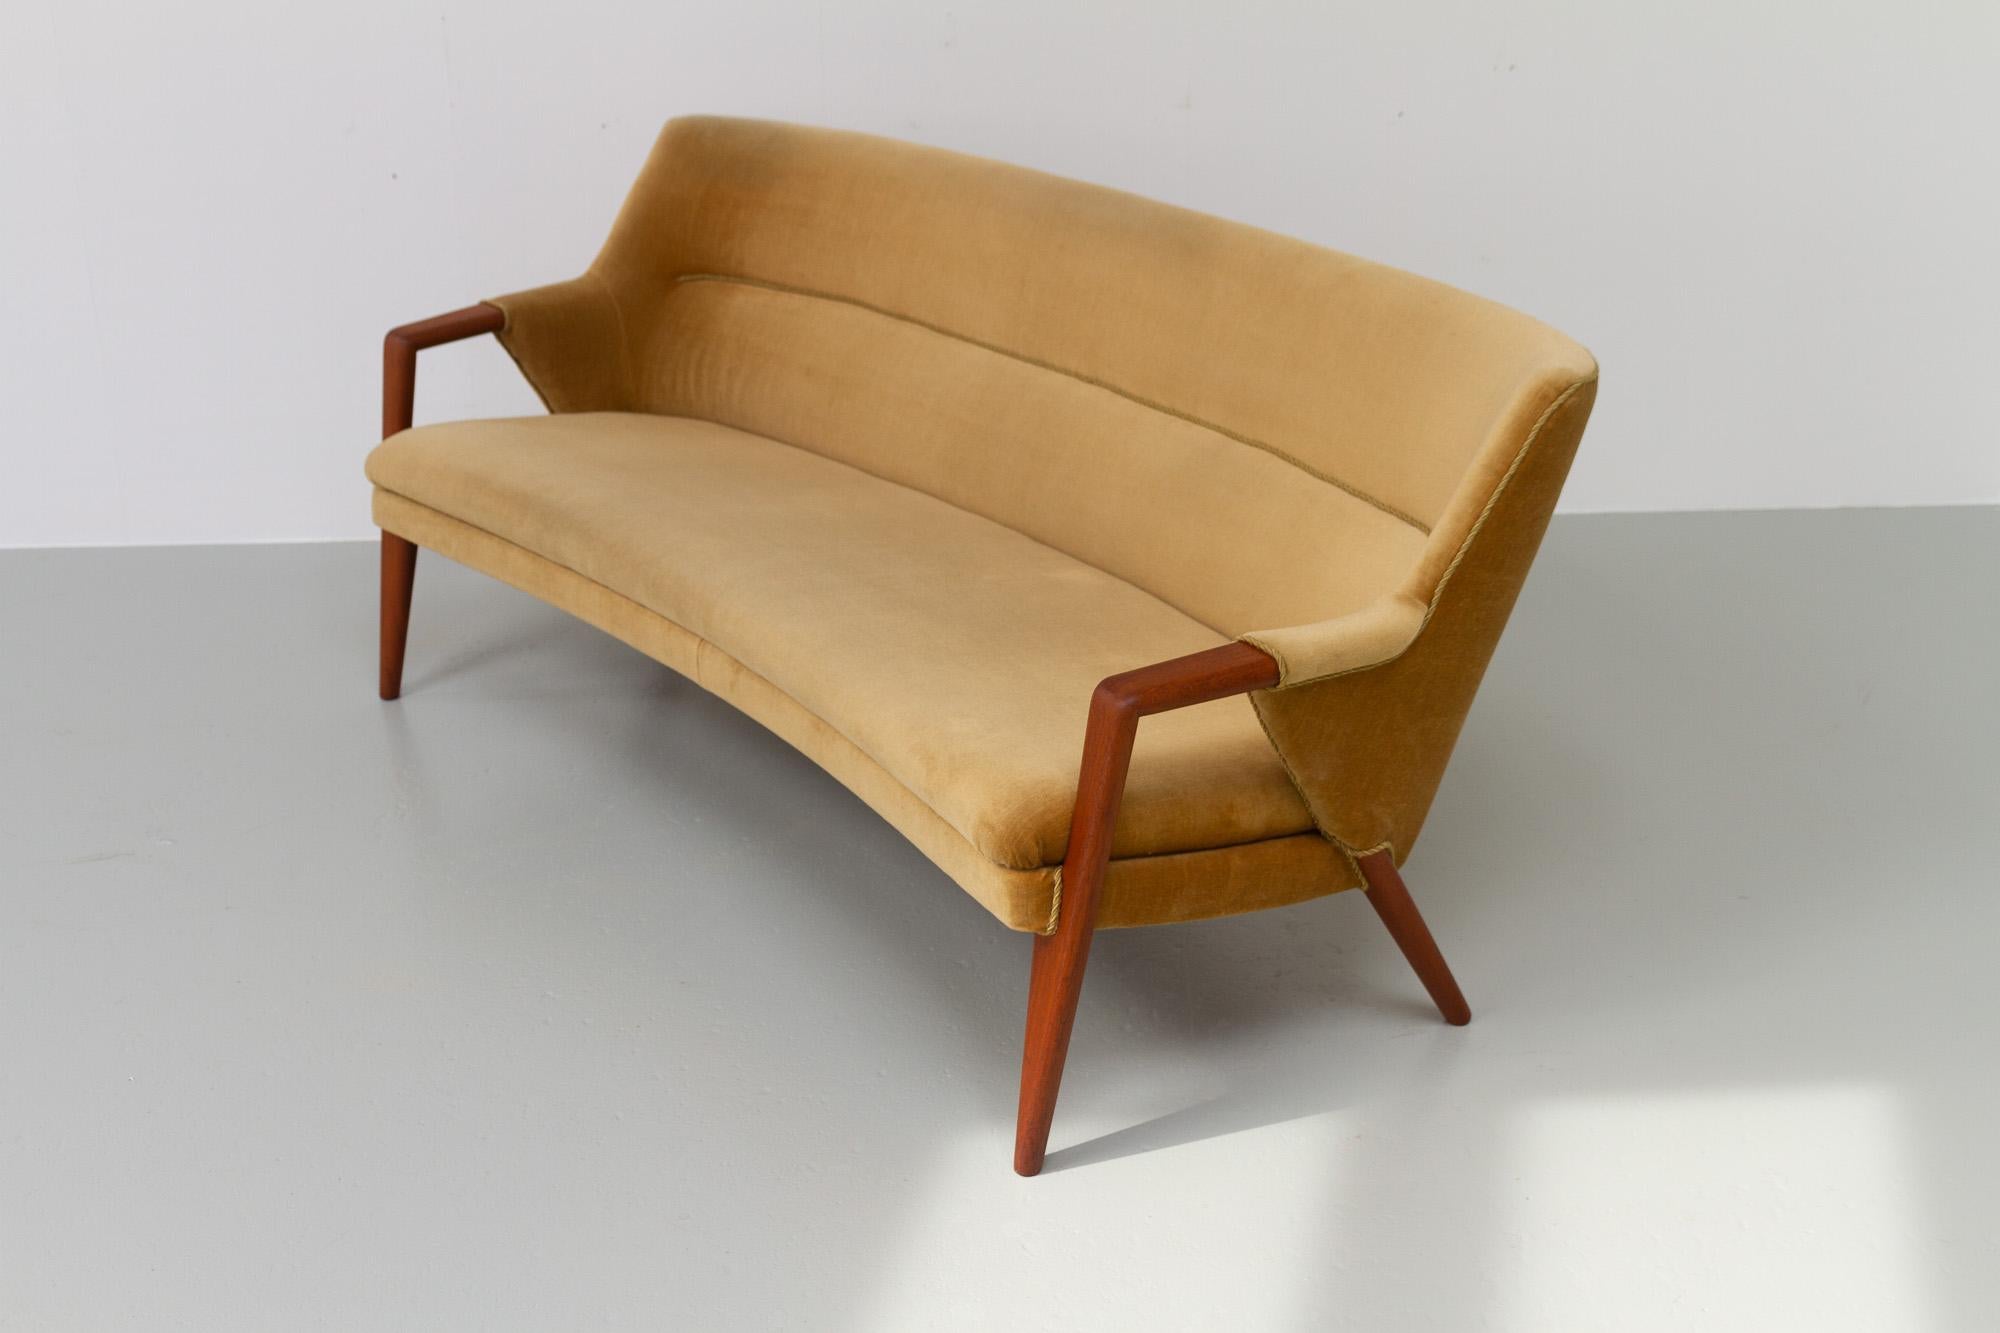 Danish Modern Banana Sofa and Chair by Kurt Olsen for Slagelse Møbelværk, 1950s For Sale 9